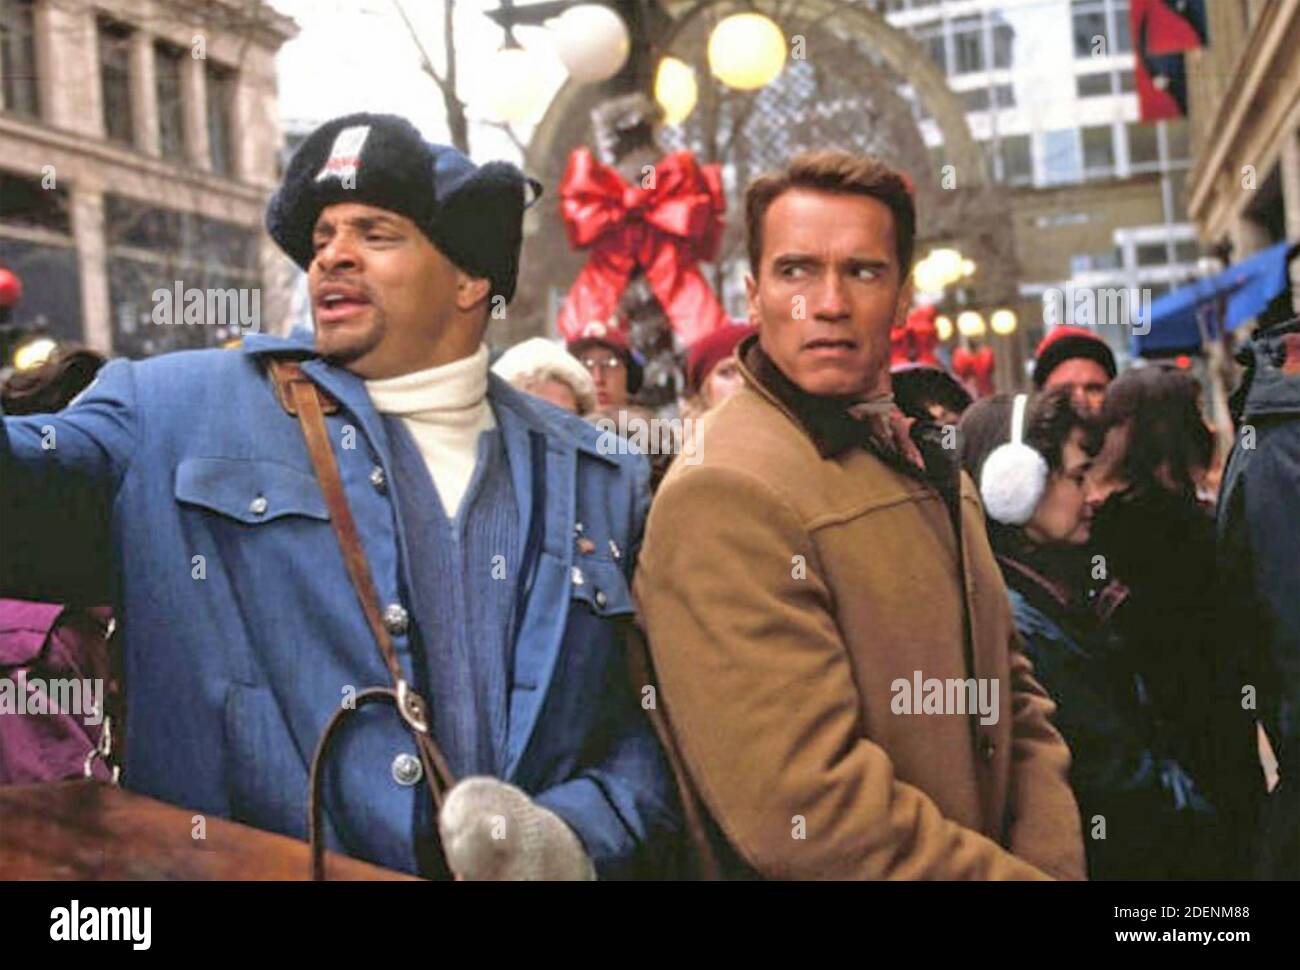 JINGLE TUTTO IL SENSO 1996 film della volpe del ventesimo secolo con Arnold Schwarzenegger a destra e Sinbad Foto Stock